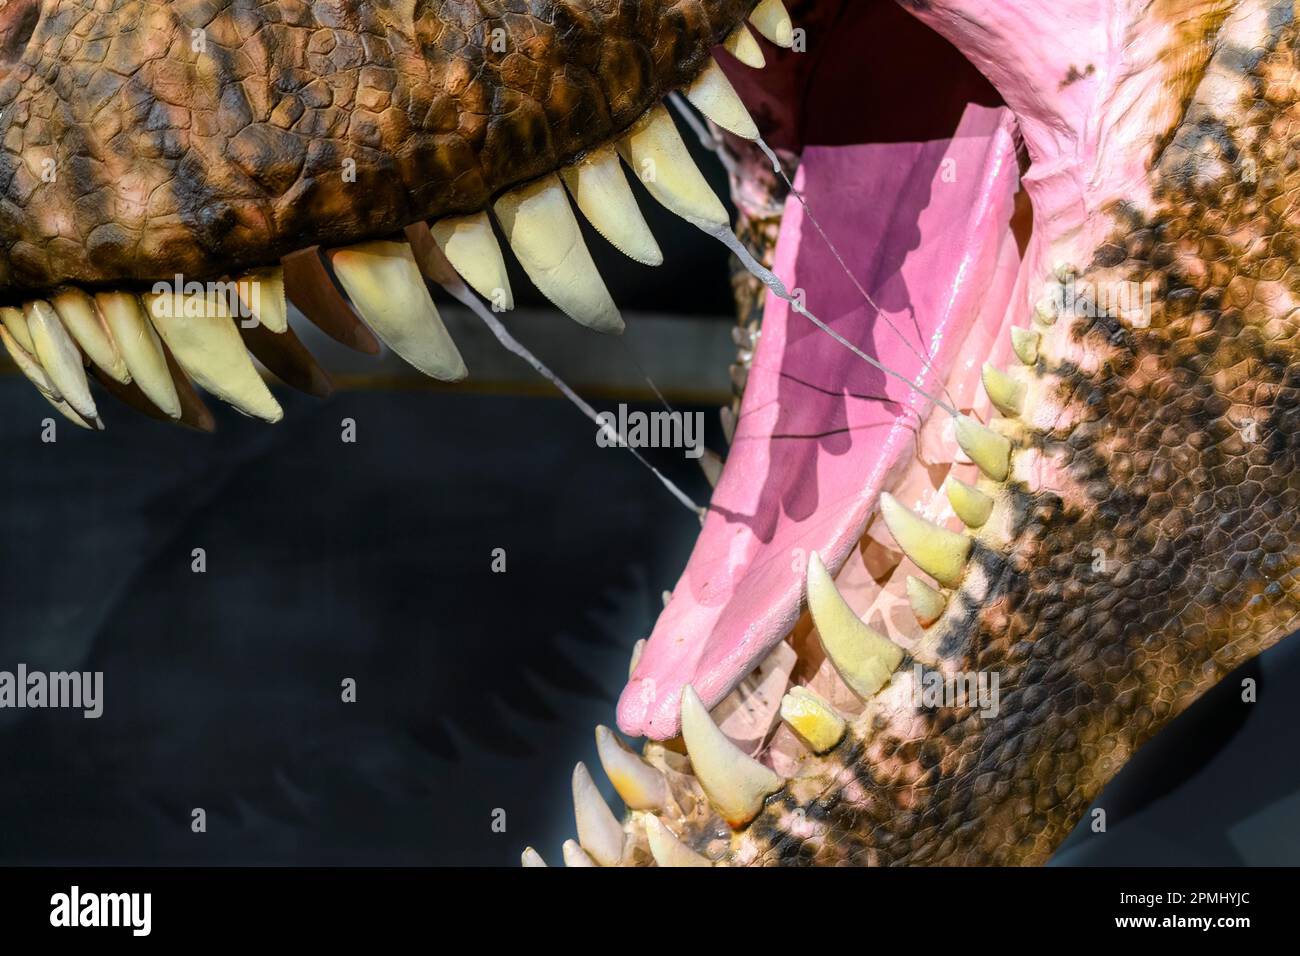 Nahaufnahme des offenen Mundes und der Zähne eines Tyrannosaurus Rex. Detaildarstellung einer realen Grösse eines erwachsenen Tieres (20 Jahre alt). Modell oder Replikat zeigt i Stockfoto